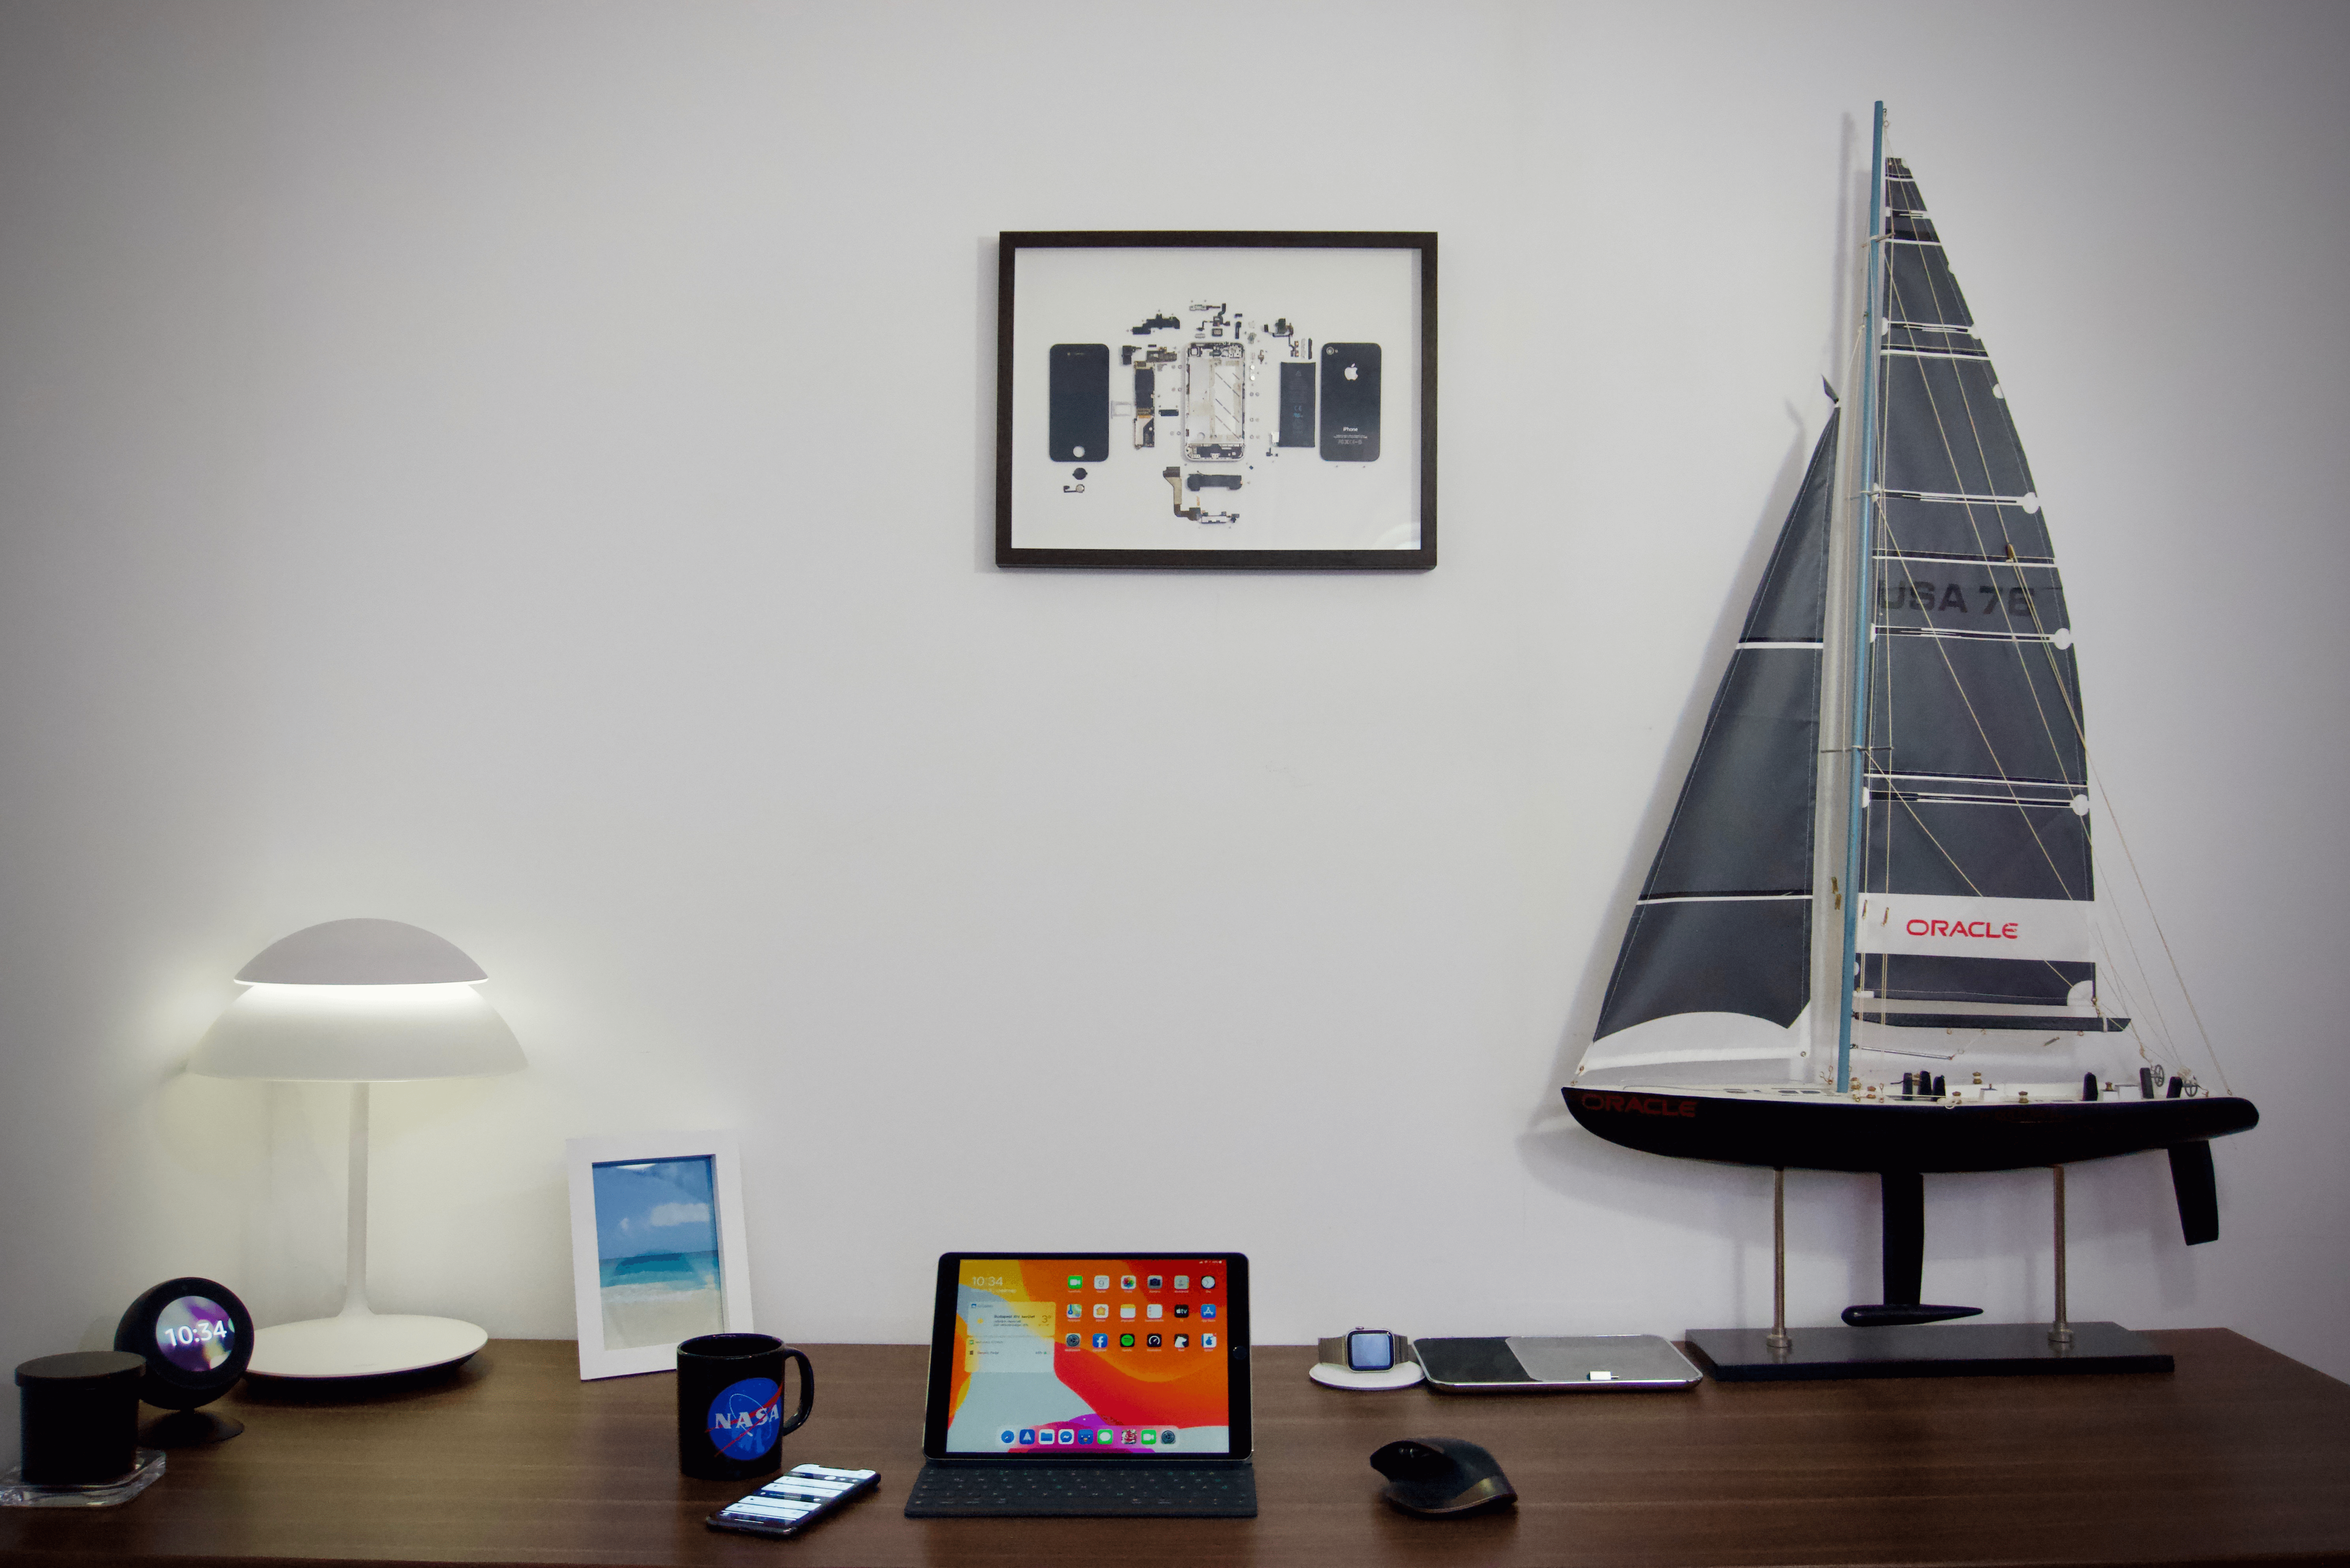 Egy fekete iPhone 4 képkeretben, íróasztal fölött a falon.